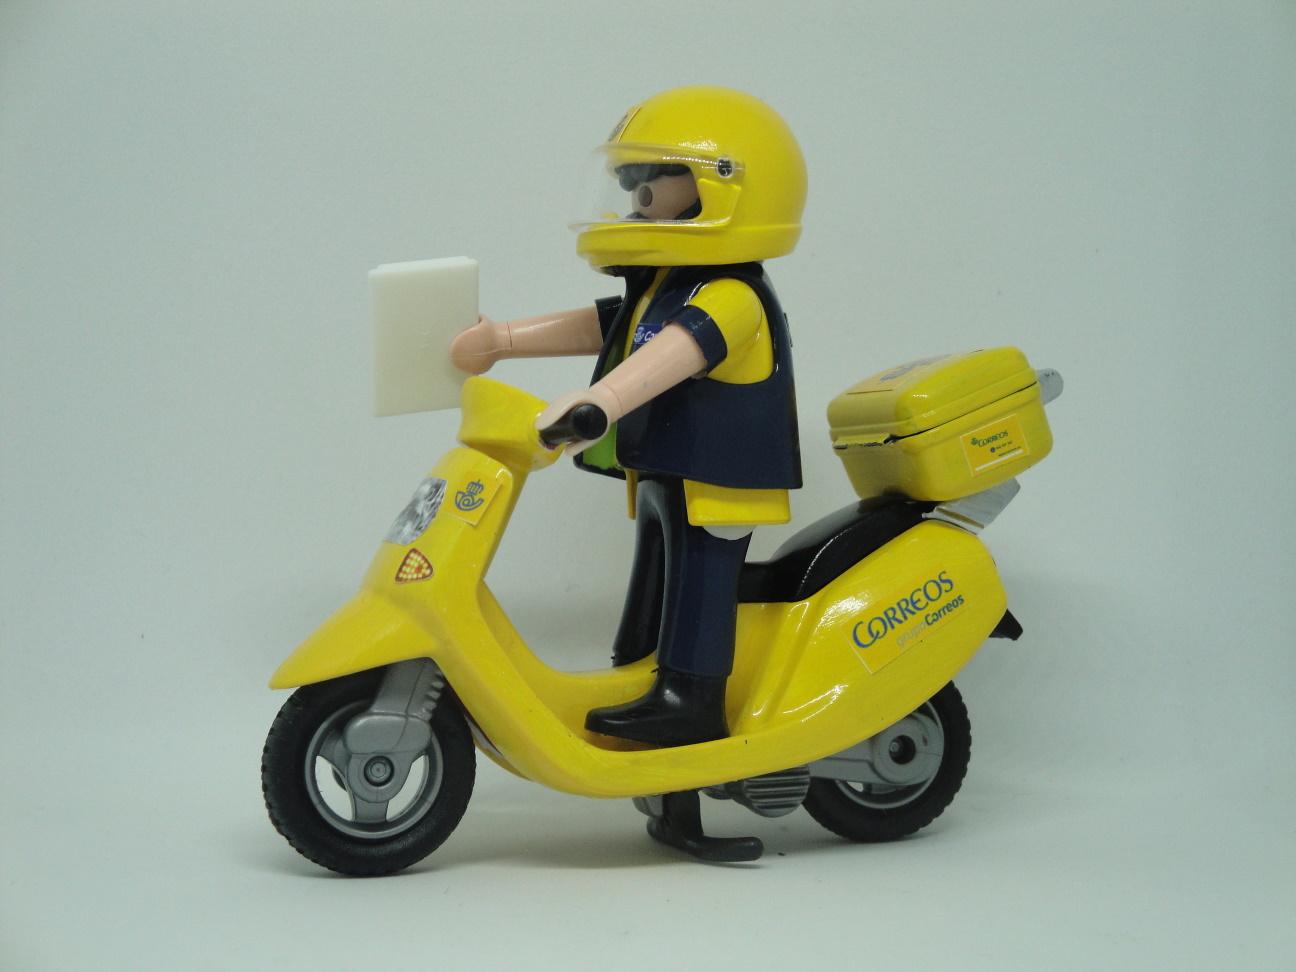 Playmobil personalizado uniforme de Correos con ciclomotor elije hombre mujer €